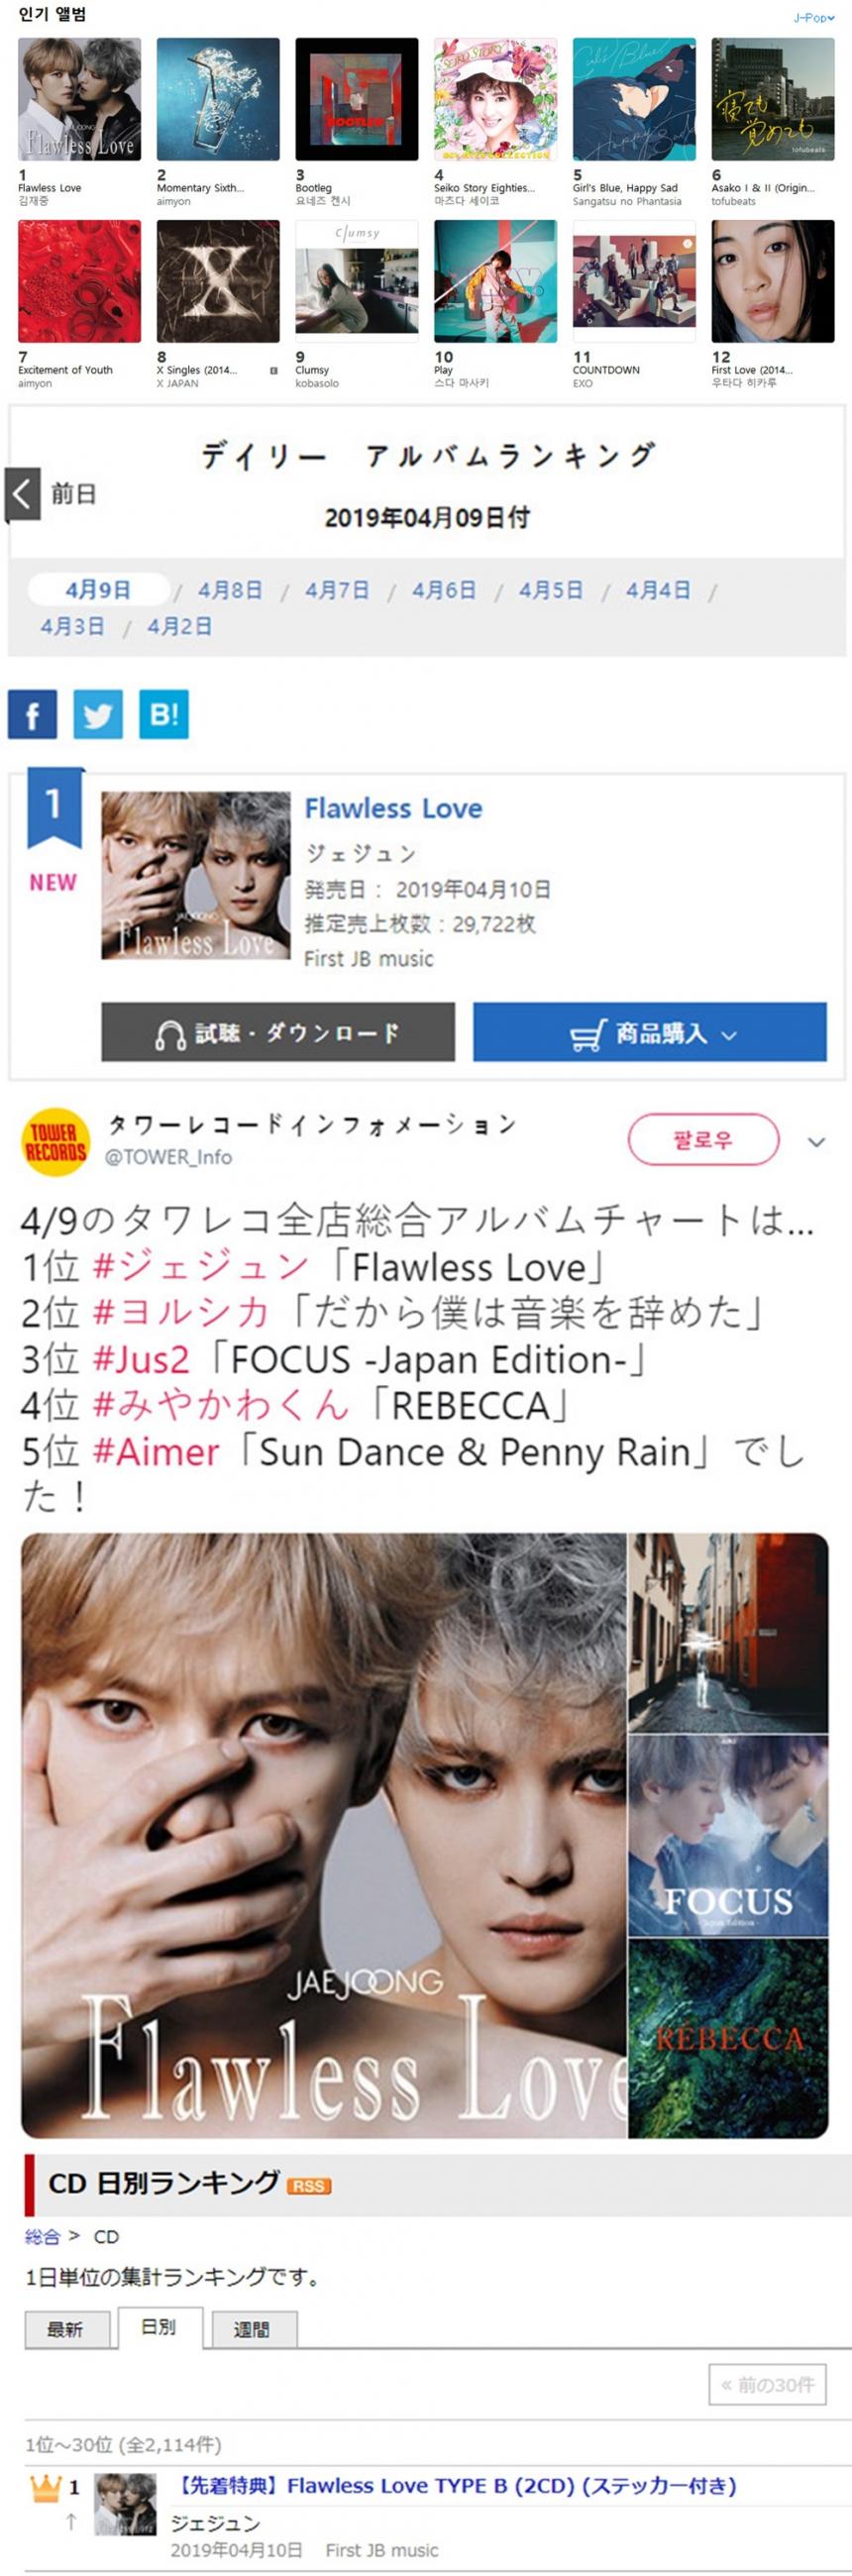 한국 아이튠즈, 일본 오리콘차트 홈페이지, HMV 공식 트위터, 라쿠텐 홈페이지